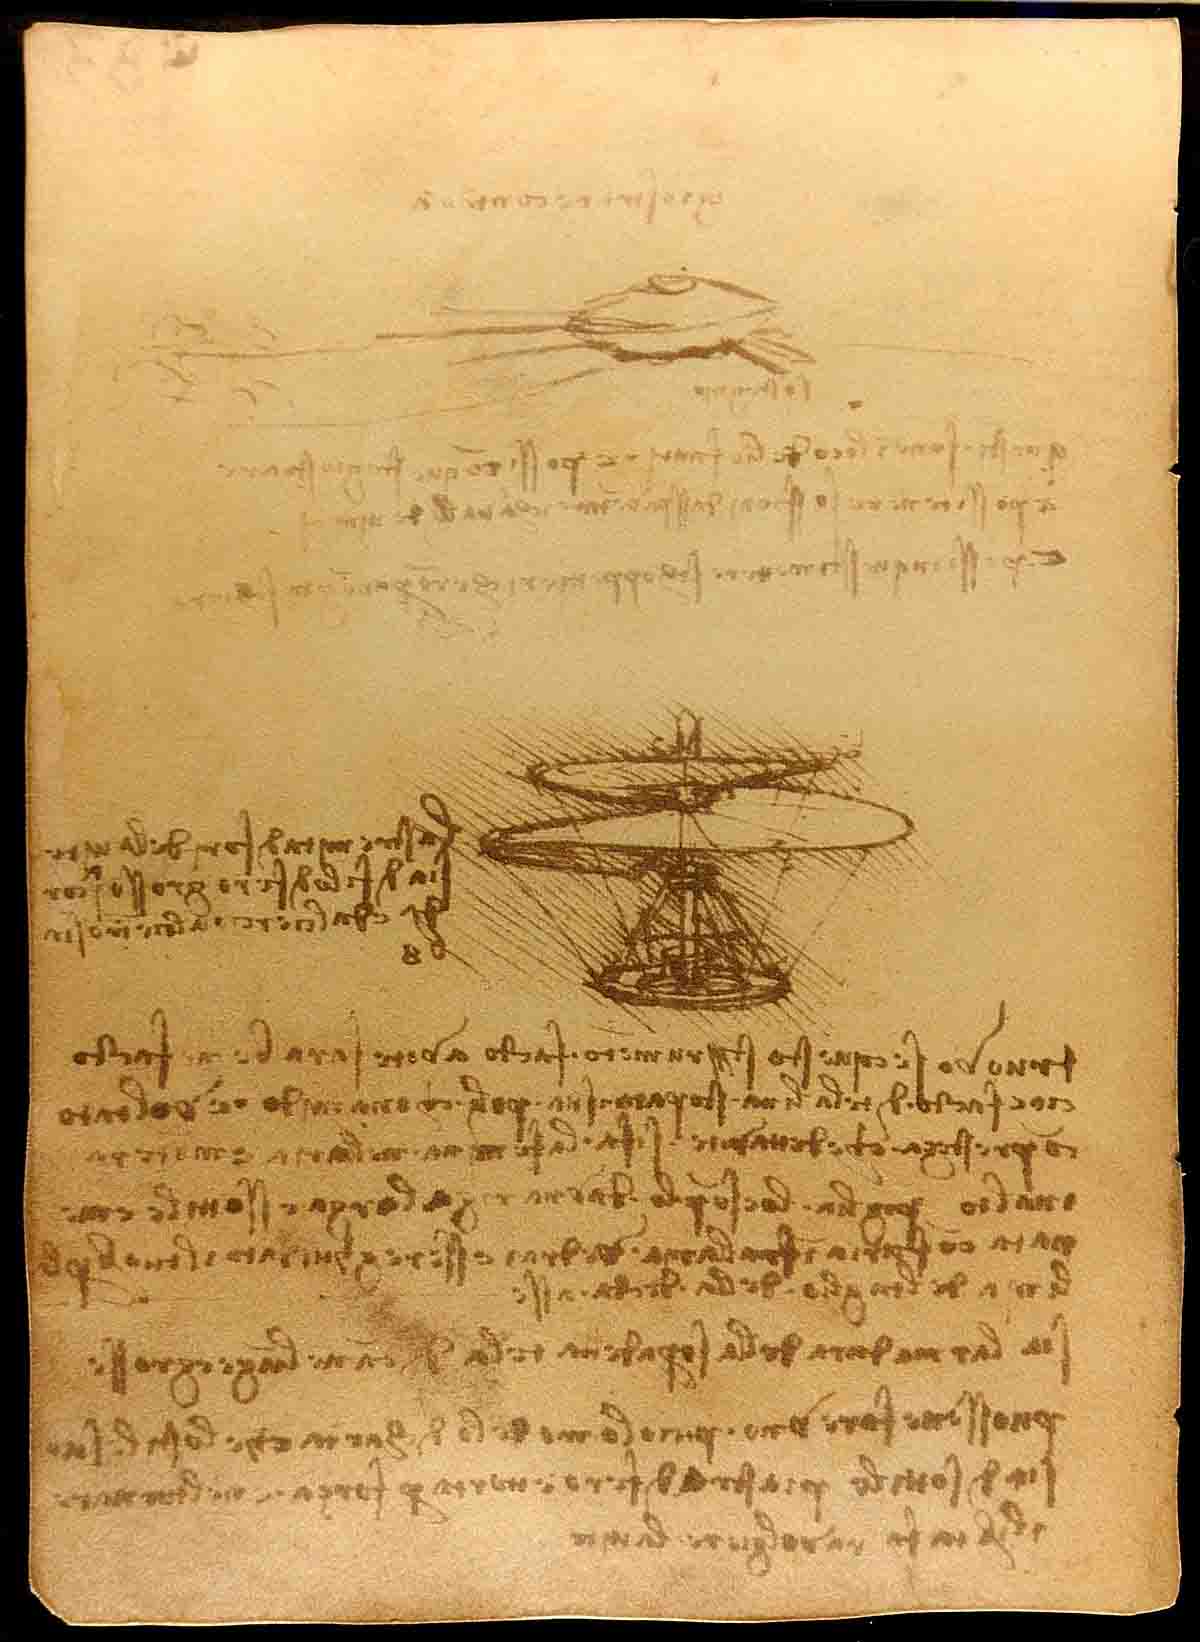 квадрокоптер, Леонардо да Винчи, винт Архимеда